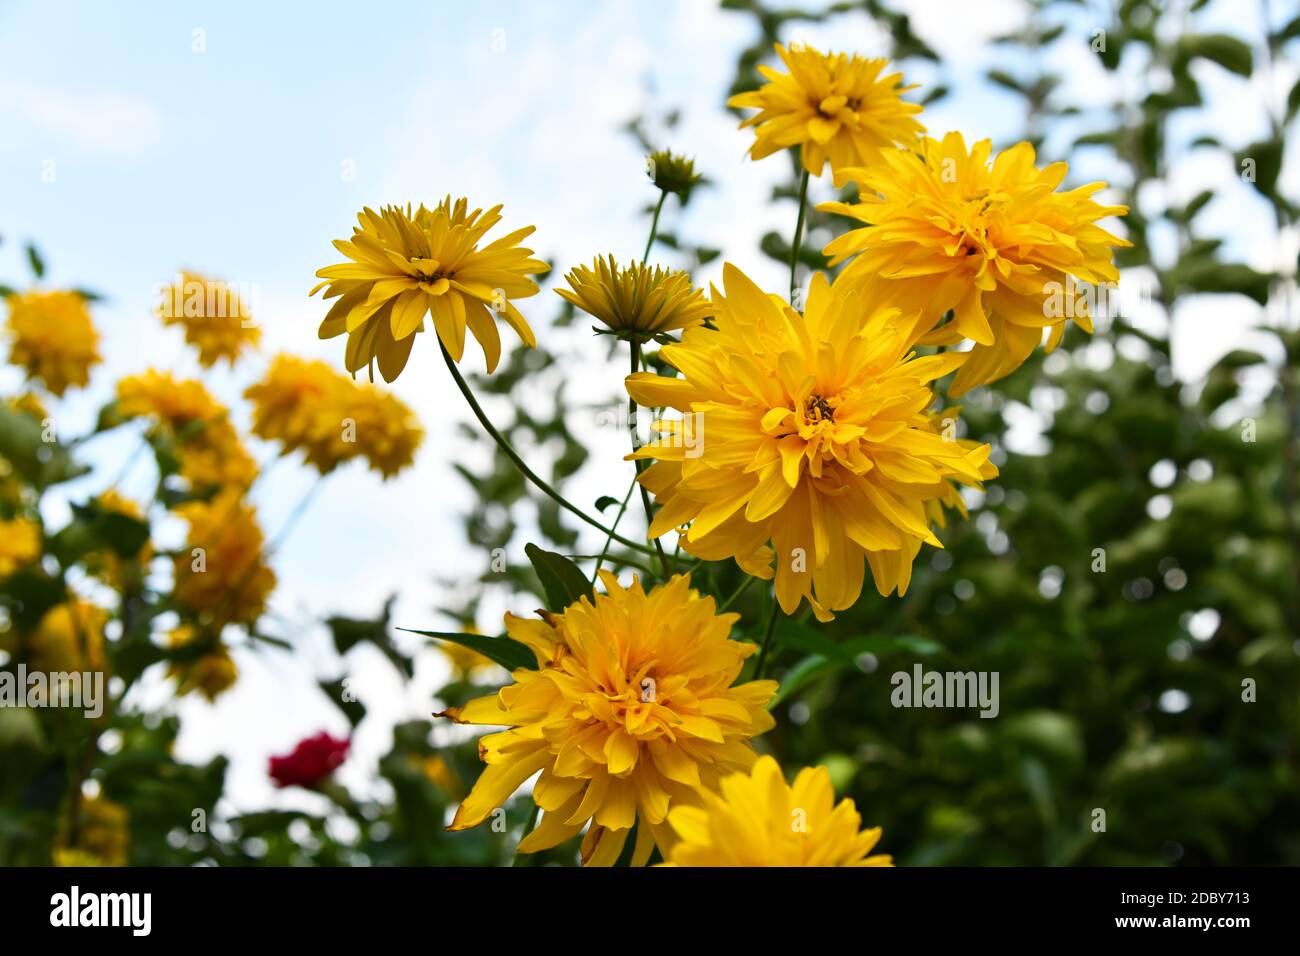 yellow flowering kerria japonica in the garden Stock Photo